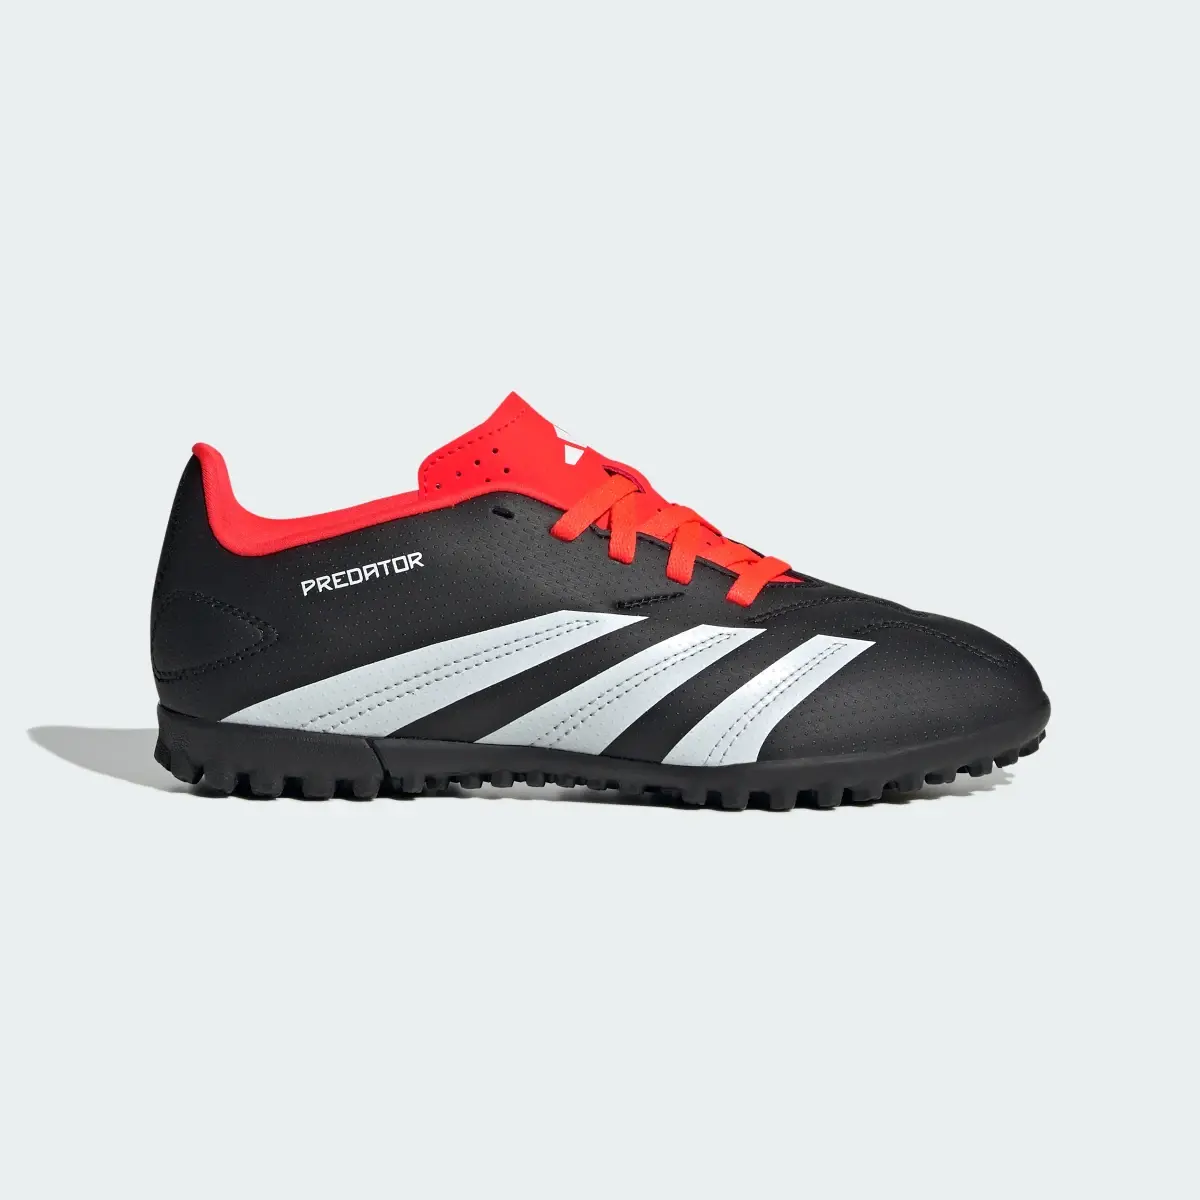 Adidas Predator Club Turf Football Boots. 2